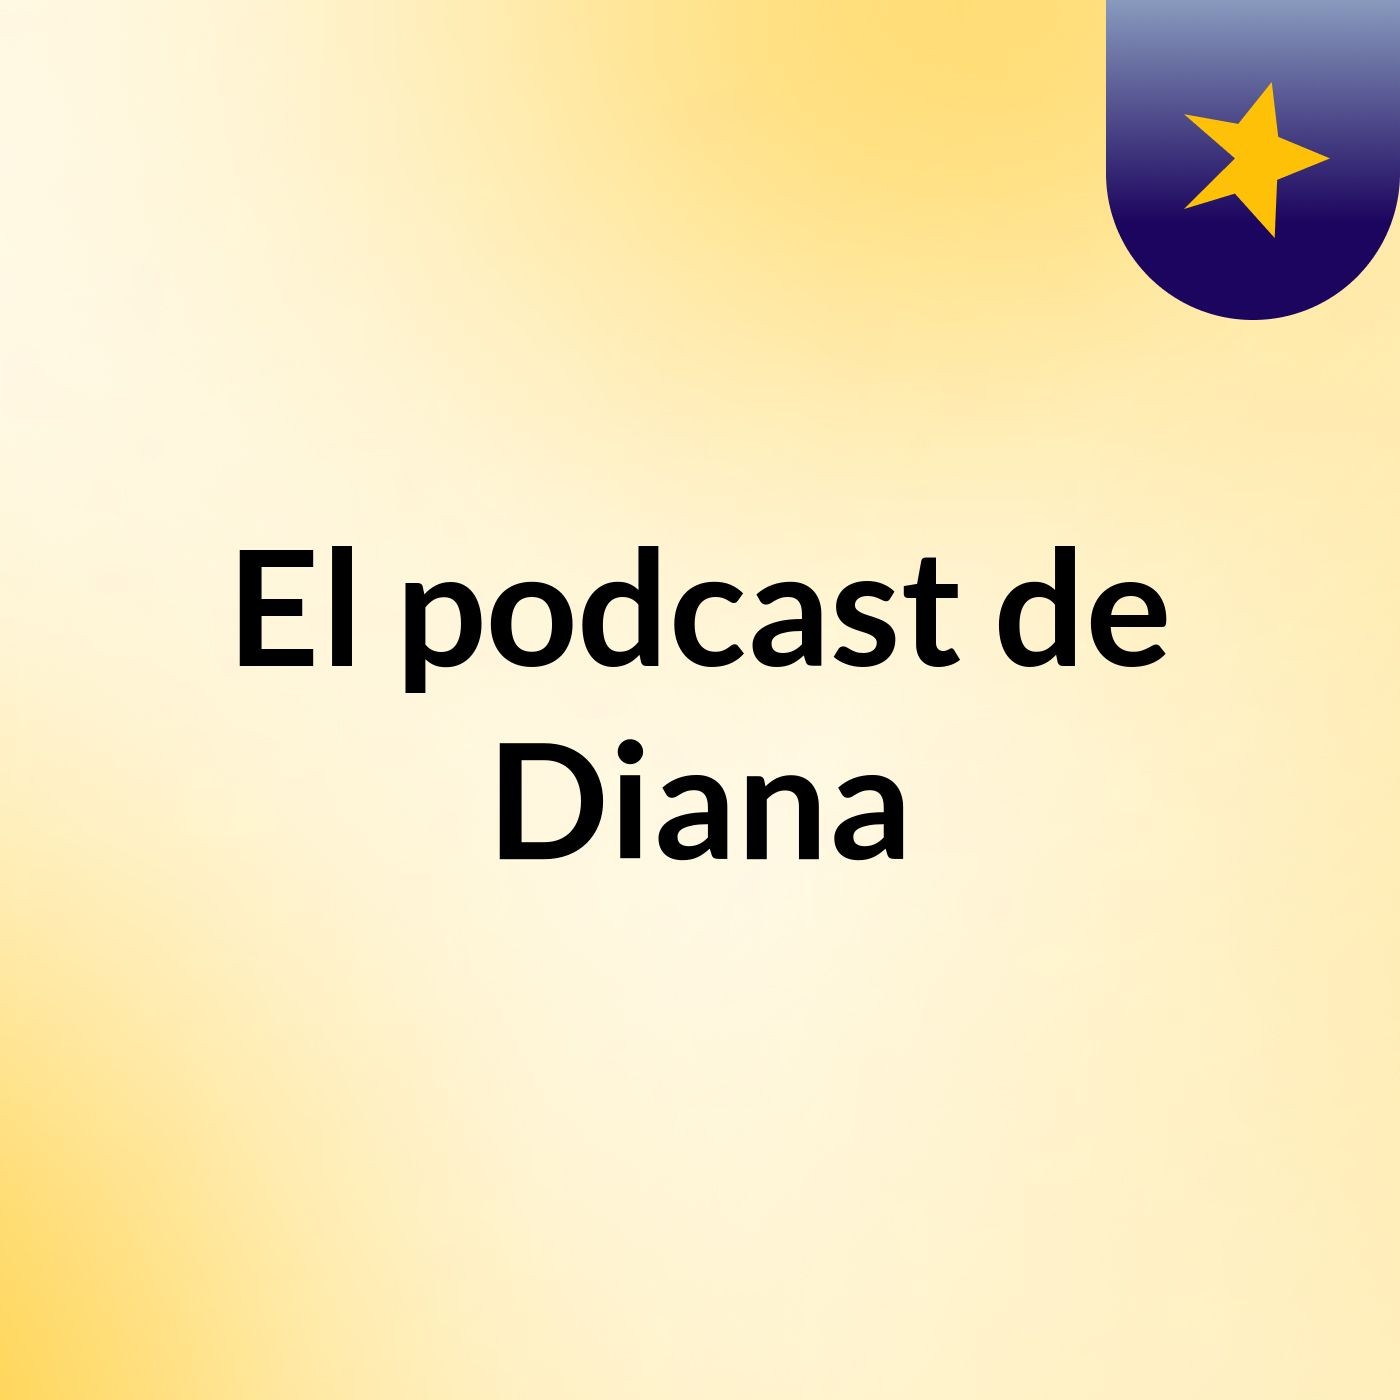 El podcast de Diana